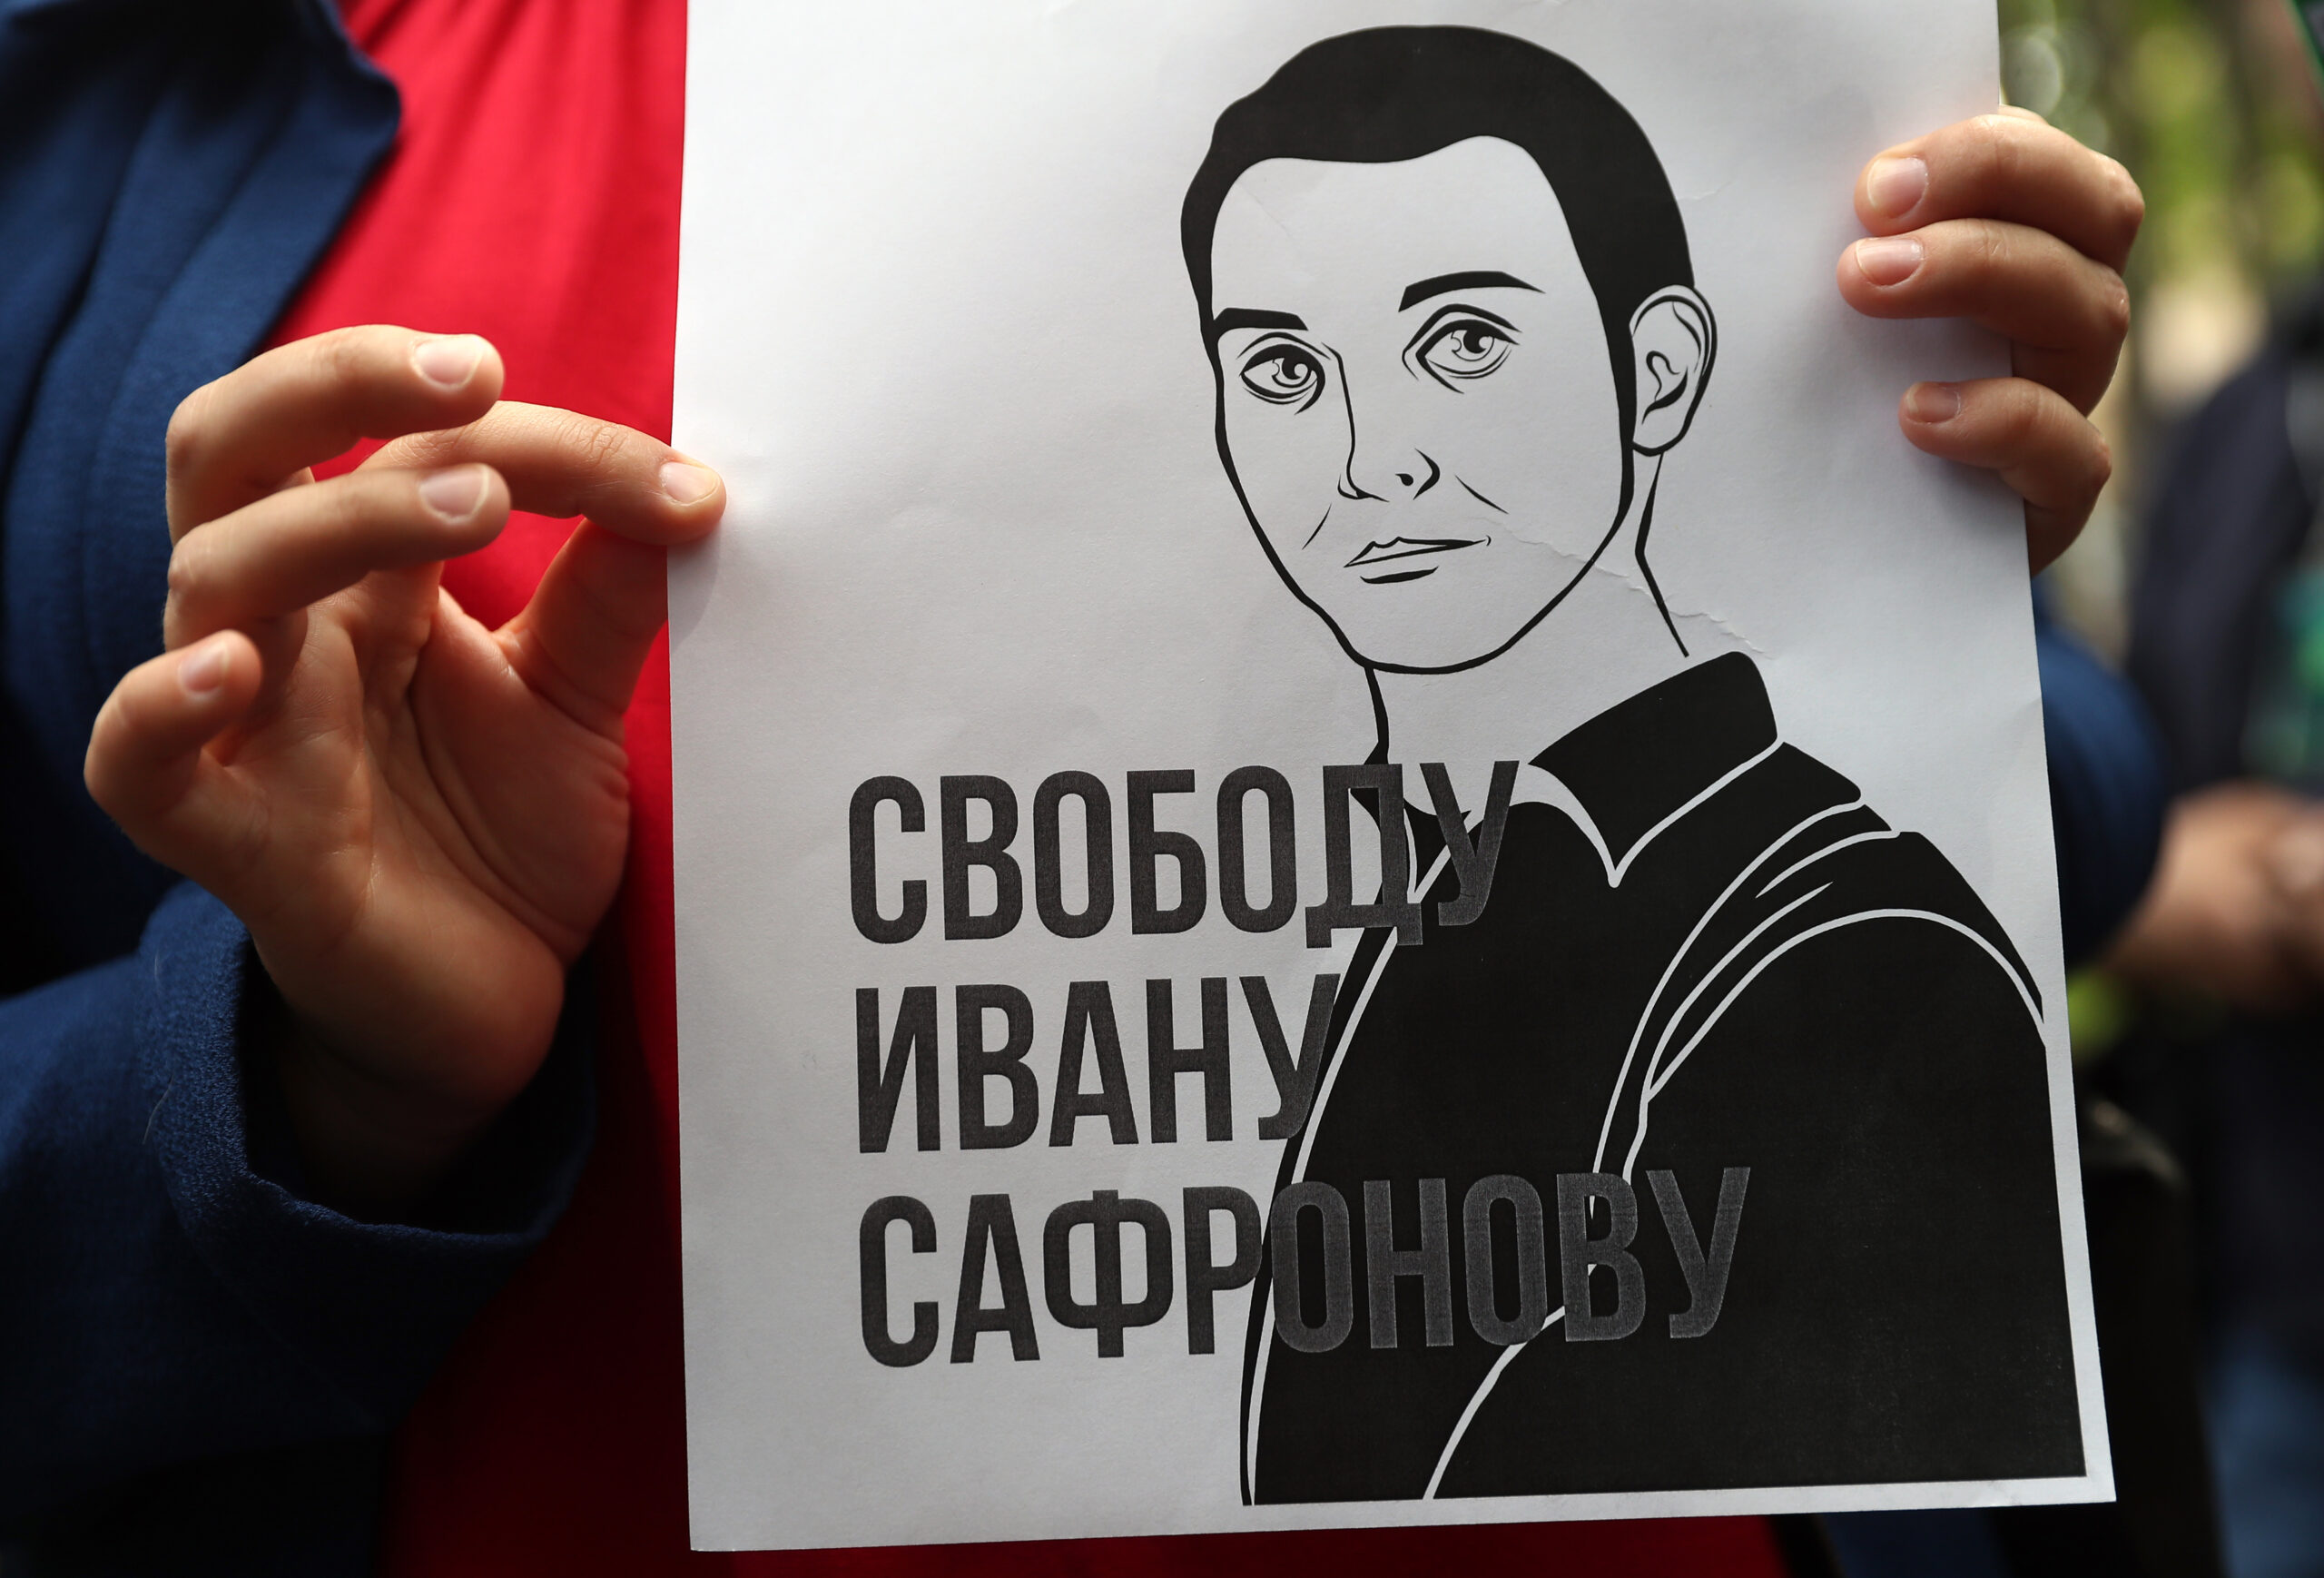 Акция в поддержку Ивана Сафронова в Москве. Фото Sergei Savostyanov/TASS/ Scanpix/Leta